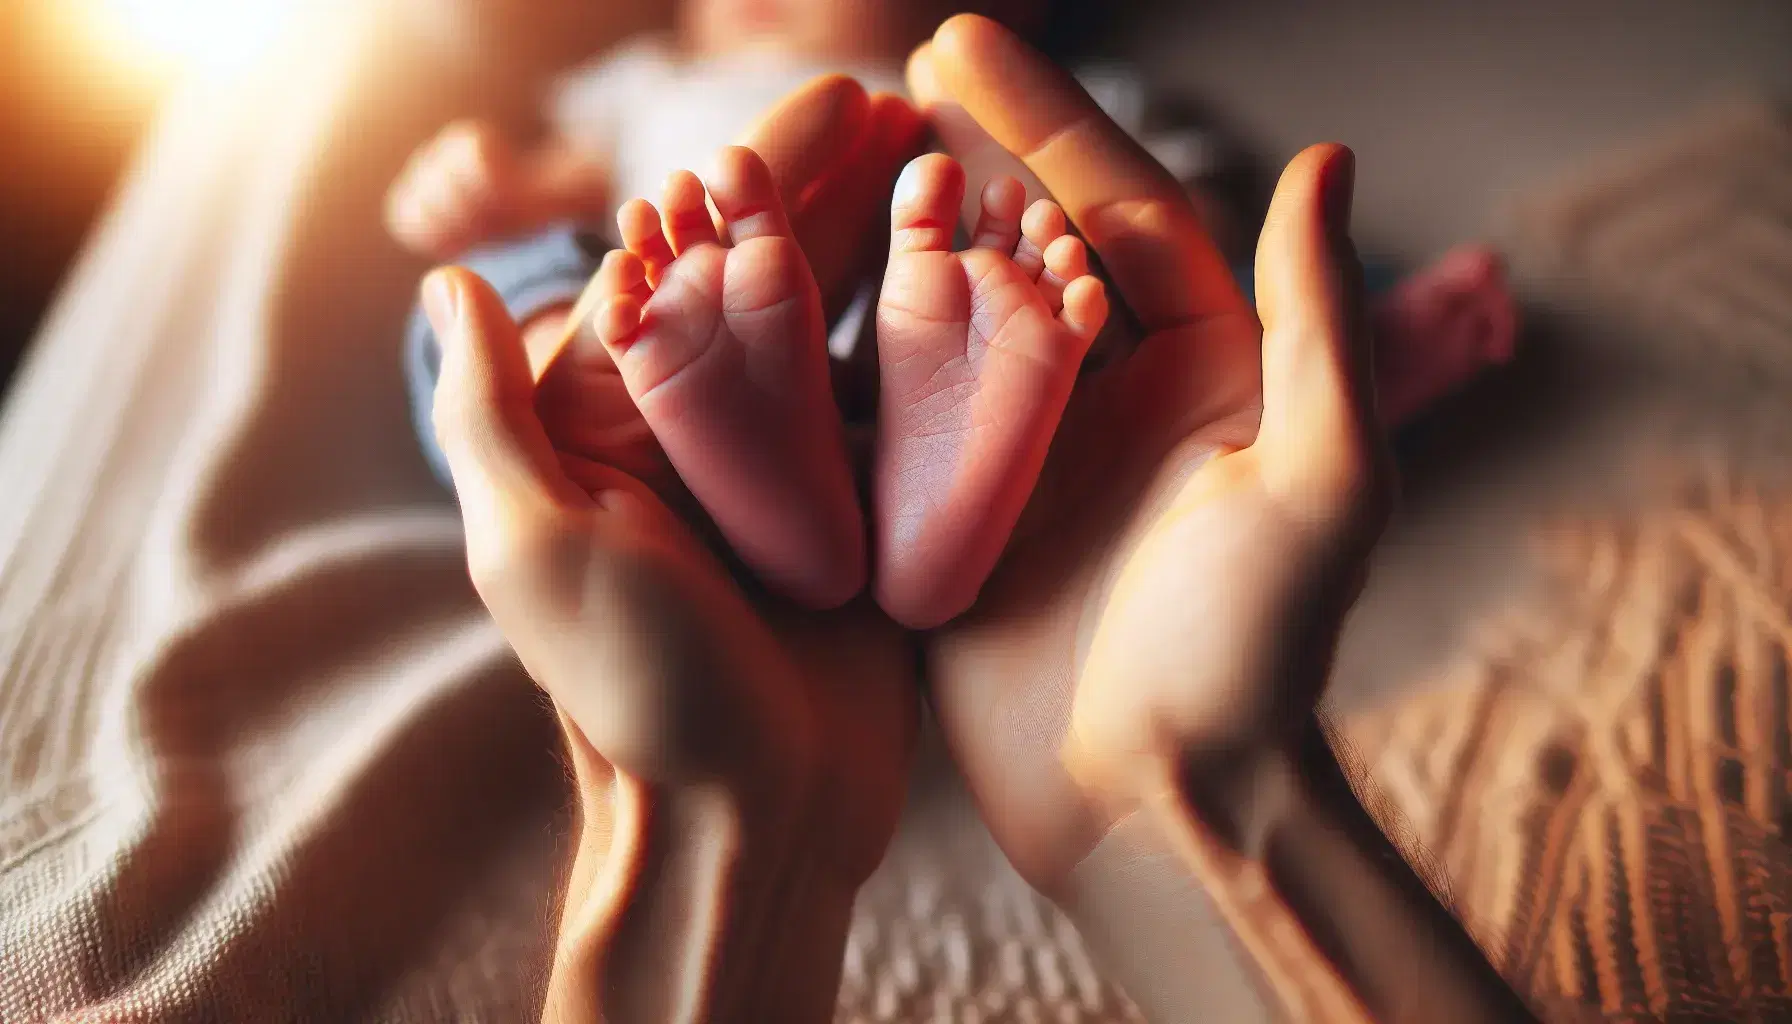 Manos adultas sosteniendo delicadamente los pies pequeños y rosados de un recién nacido, con un fondo suave y cálido que resalta la ternura de la escena.